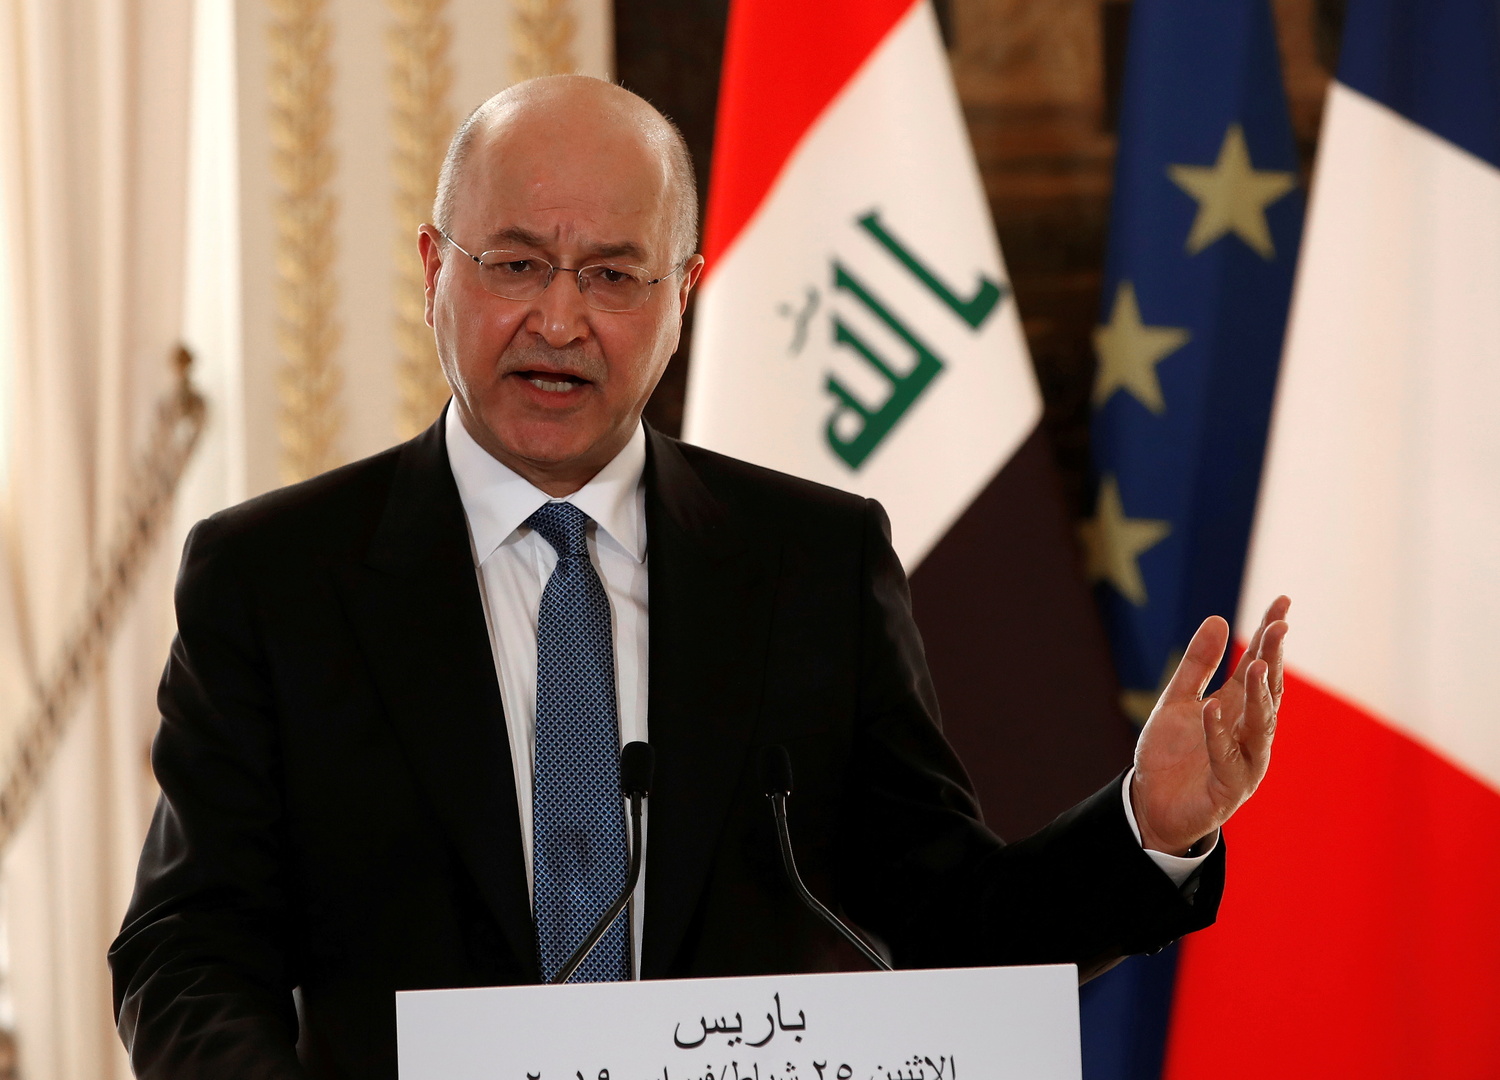 صالح وماكغورك يبحثان إنهاء الدور القتالي للتحالف الدولي في العراق